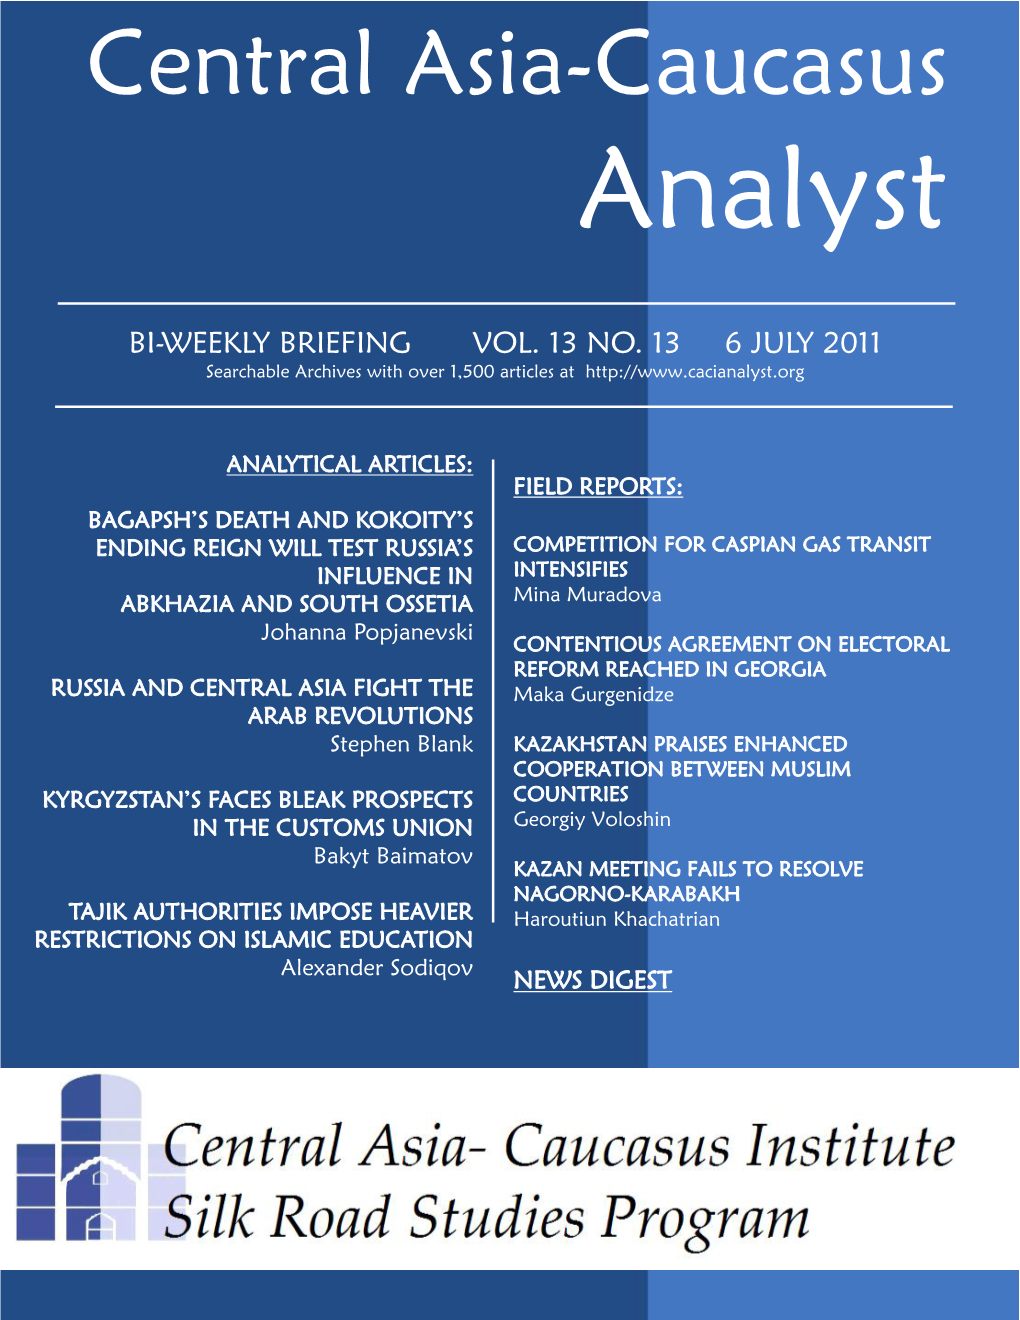 Central Asia-Caucasus Analyst Vol 13, No 13